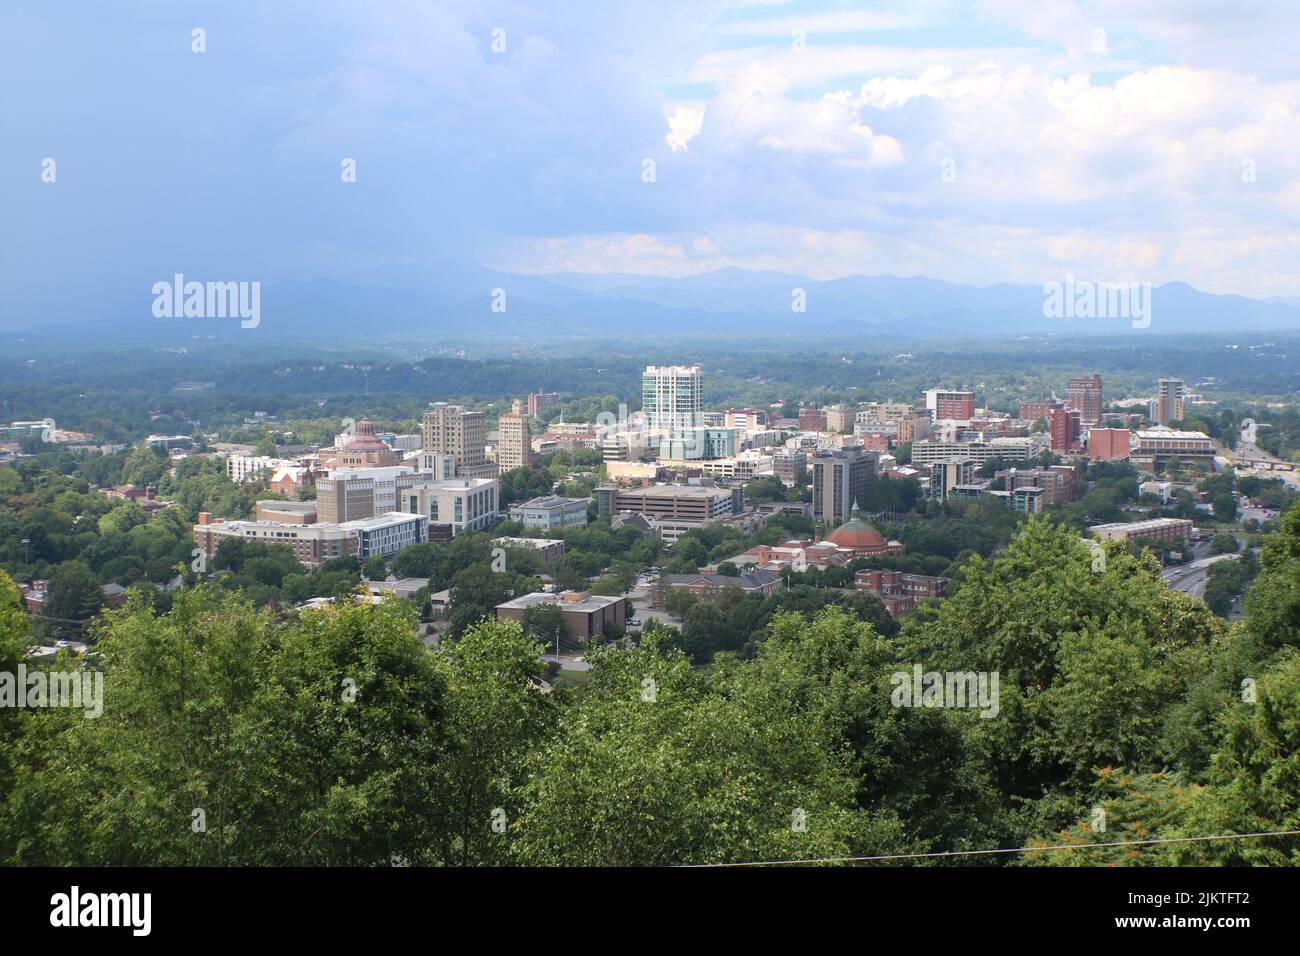 Eine wunderschöne Aussicht auf die Stadt mit hohen Gebäuden und grünen Bäumen vor einem bewölkten Himmel Stockfoto